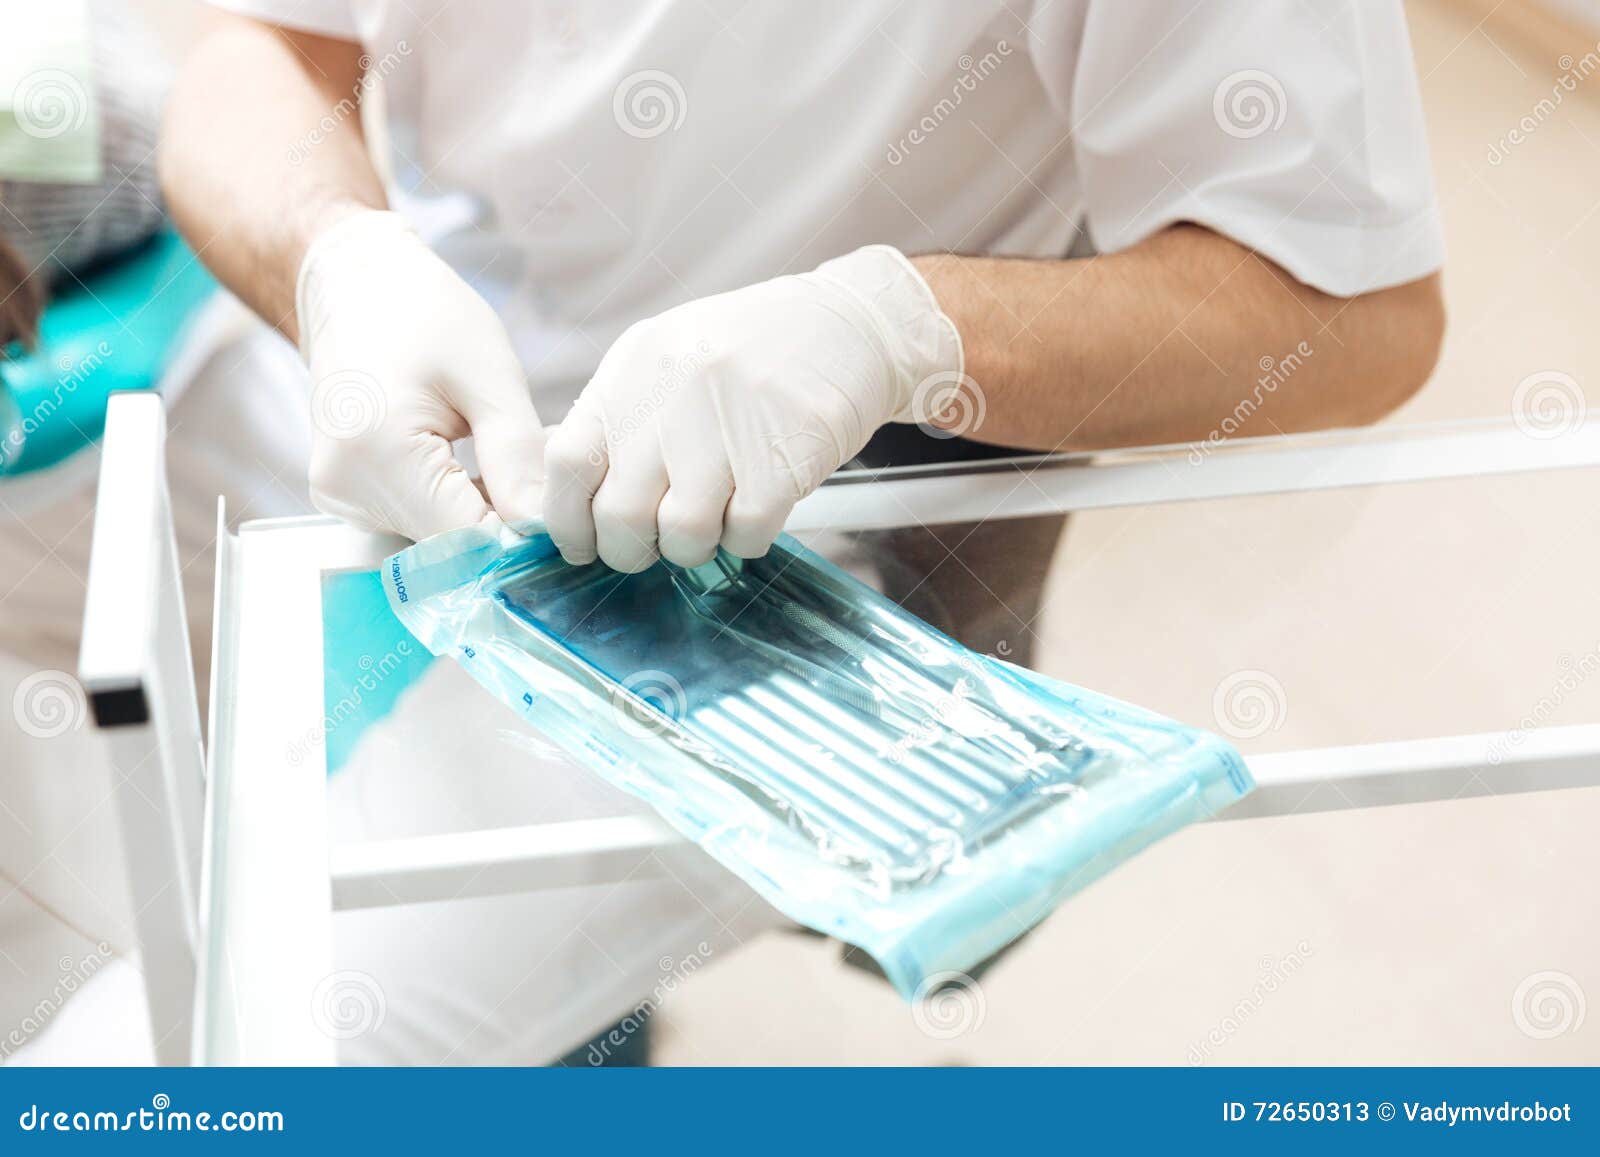 Как сделать стерильное. Асептика автоклавирование. Стерильные инструменты стоматологические. Мытье медицинских инструментов. Дезинфекция мед инструментов.